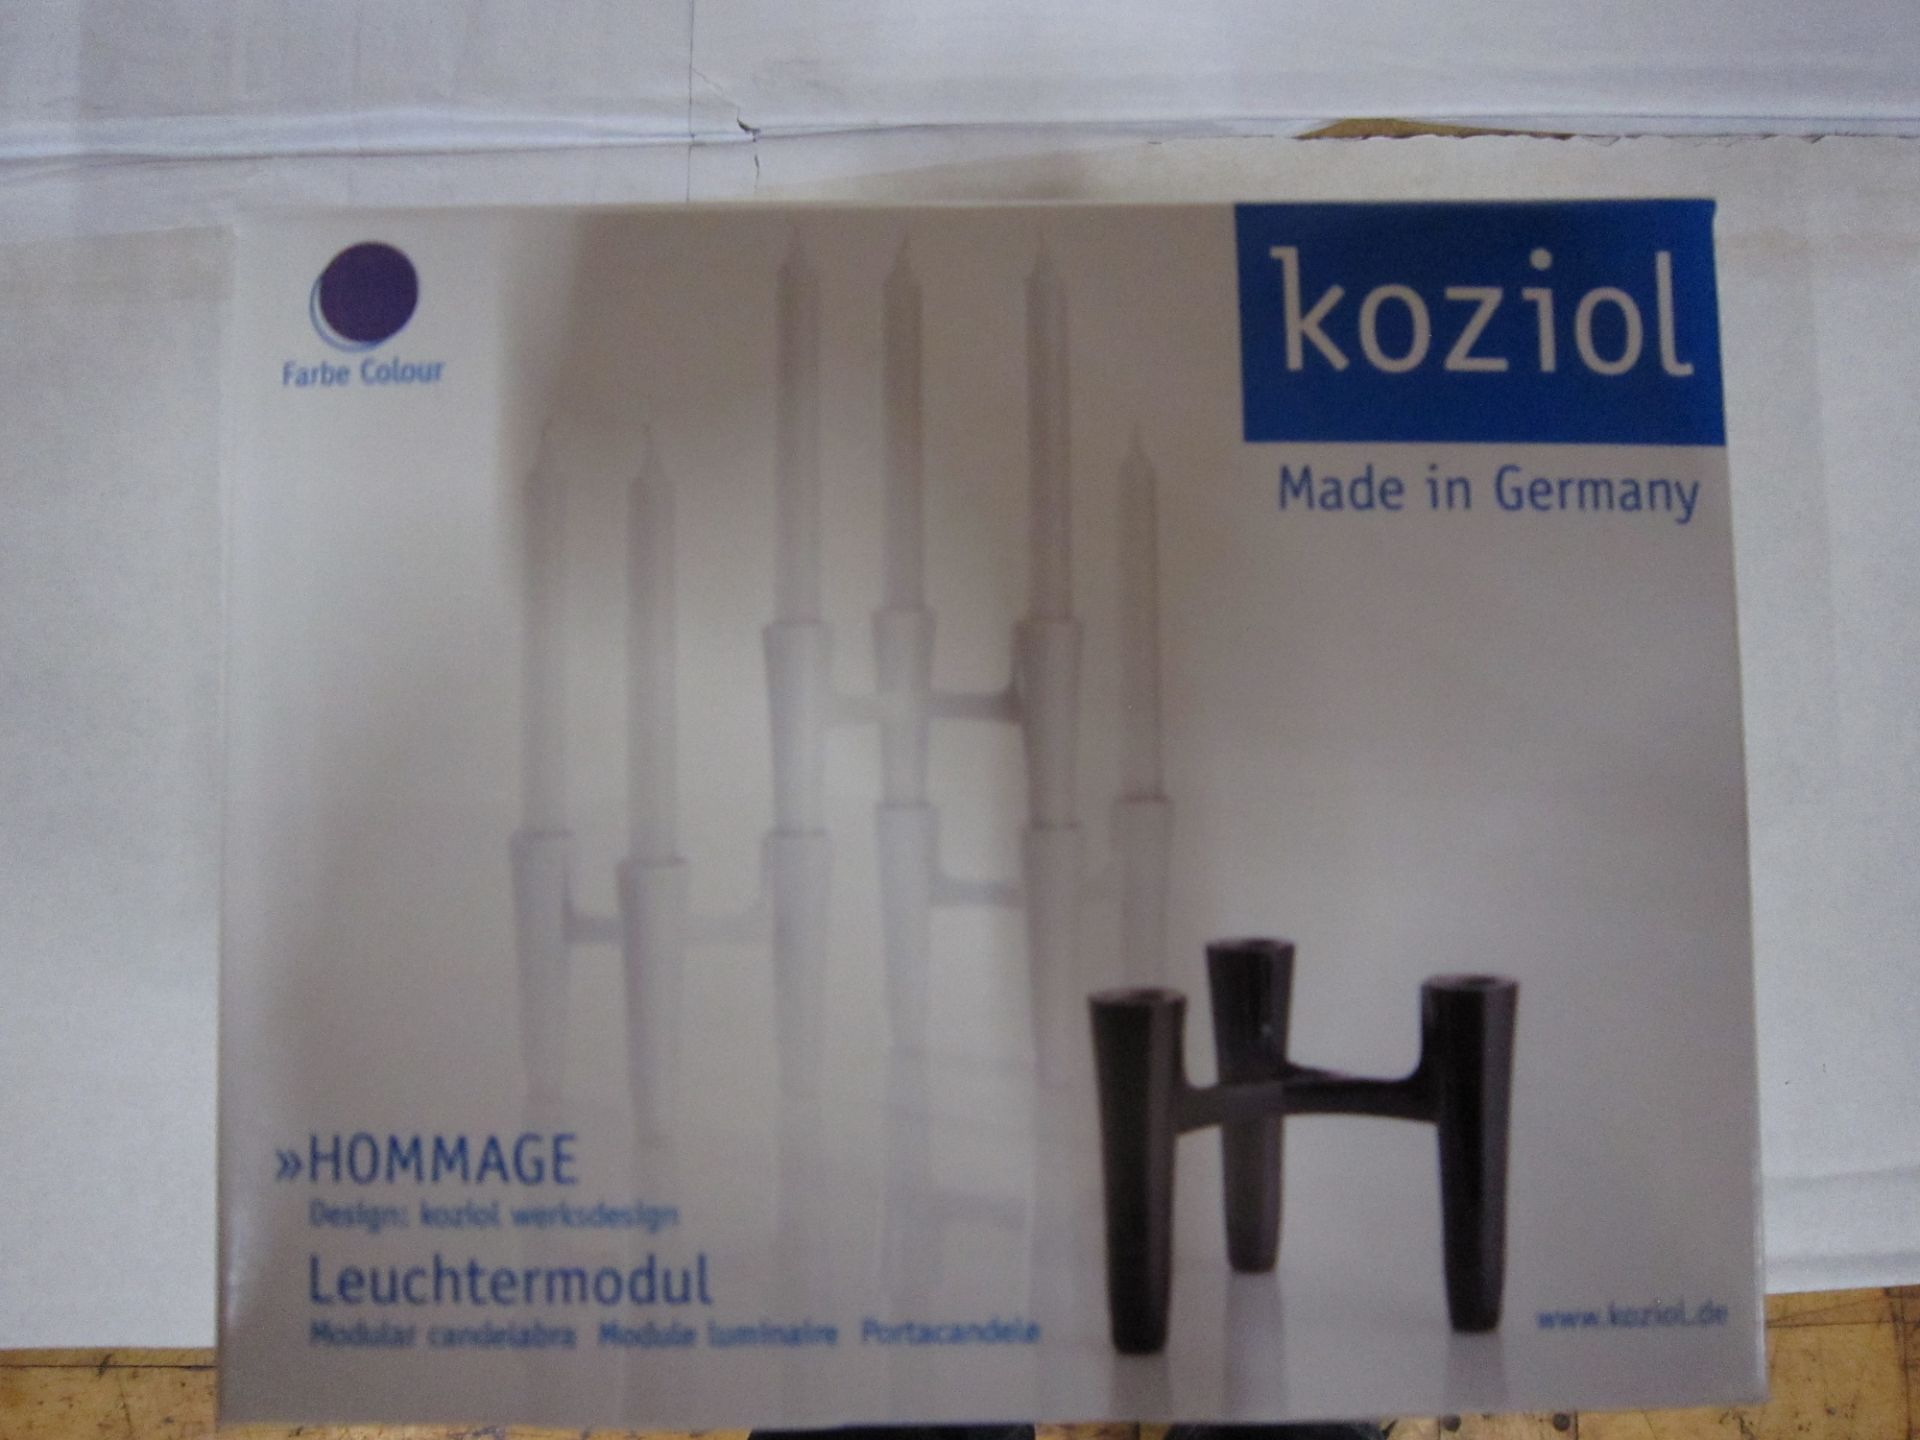 Koizel candelabras purple 200pcs new and sealed designer German brand gift led design - Image 3 of 4